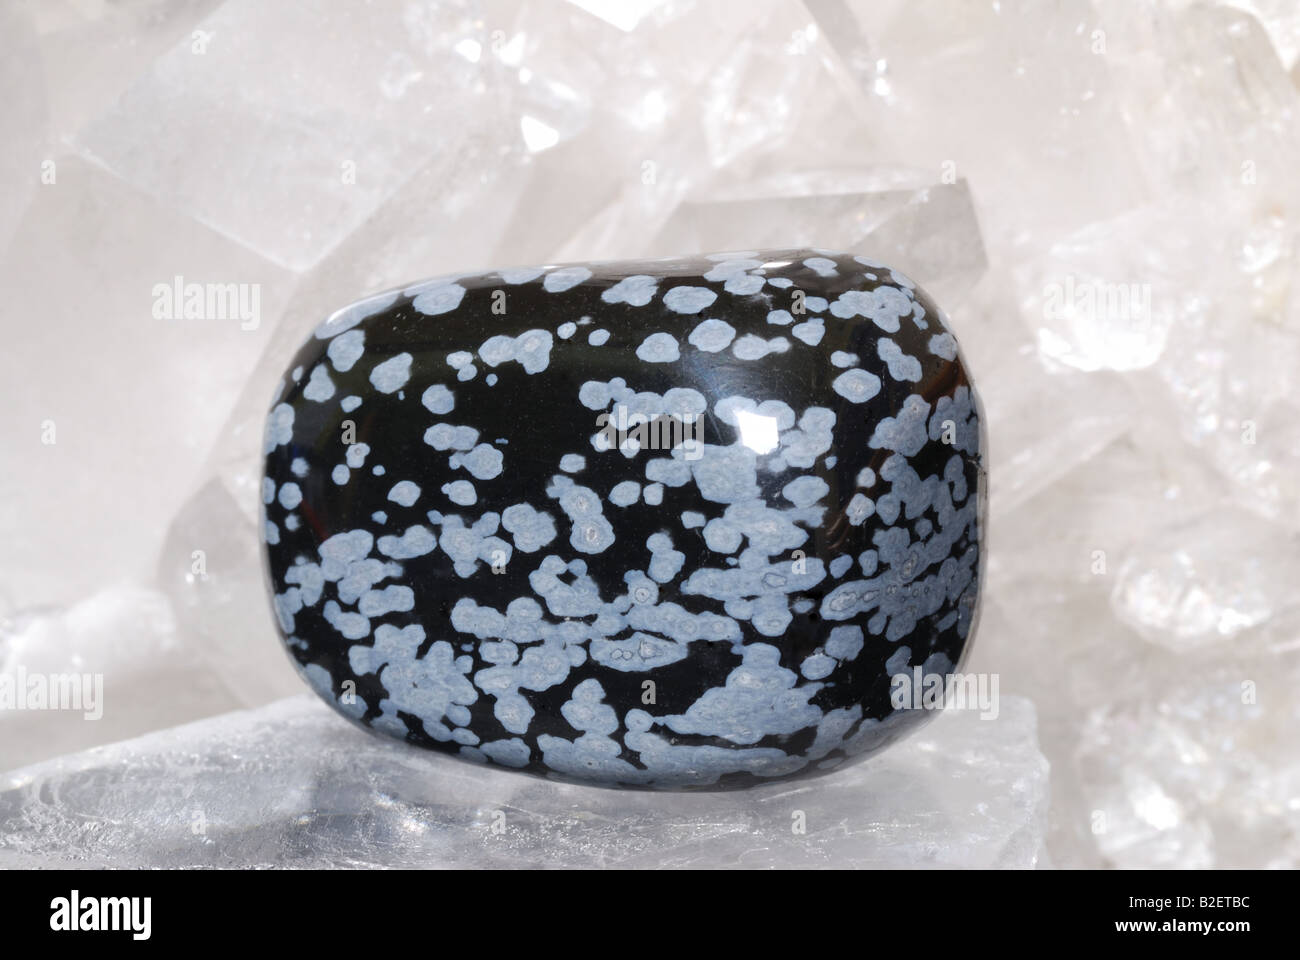 Flocke Obsidian Edelstein erregt auf Drusen von Quarzkristallen. Dieses Schmuckstück ist ein Juwel Stein als auch in der alternativen Medizin verwendet. Stockfoto